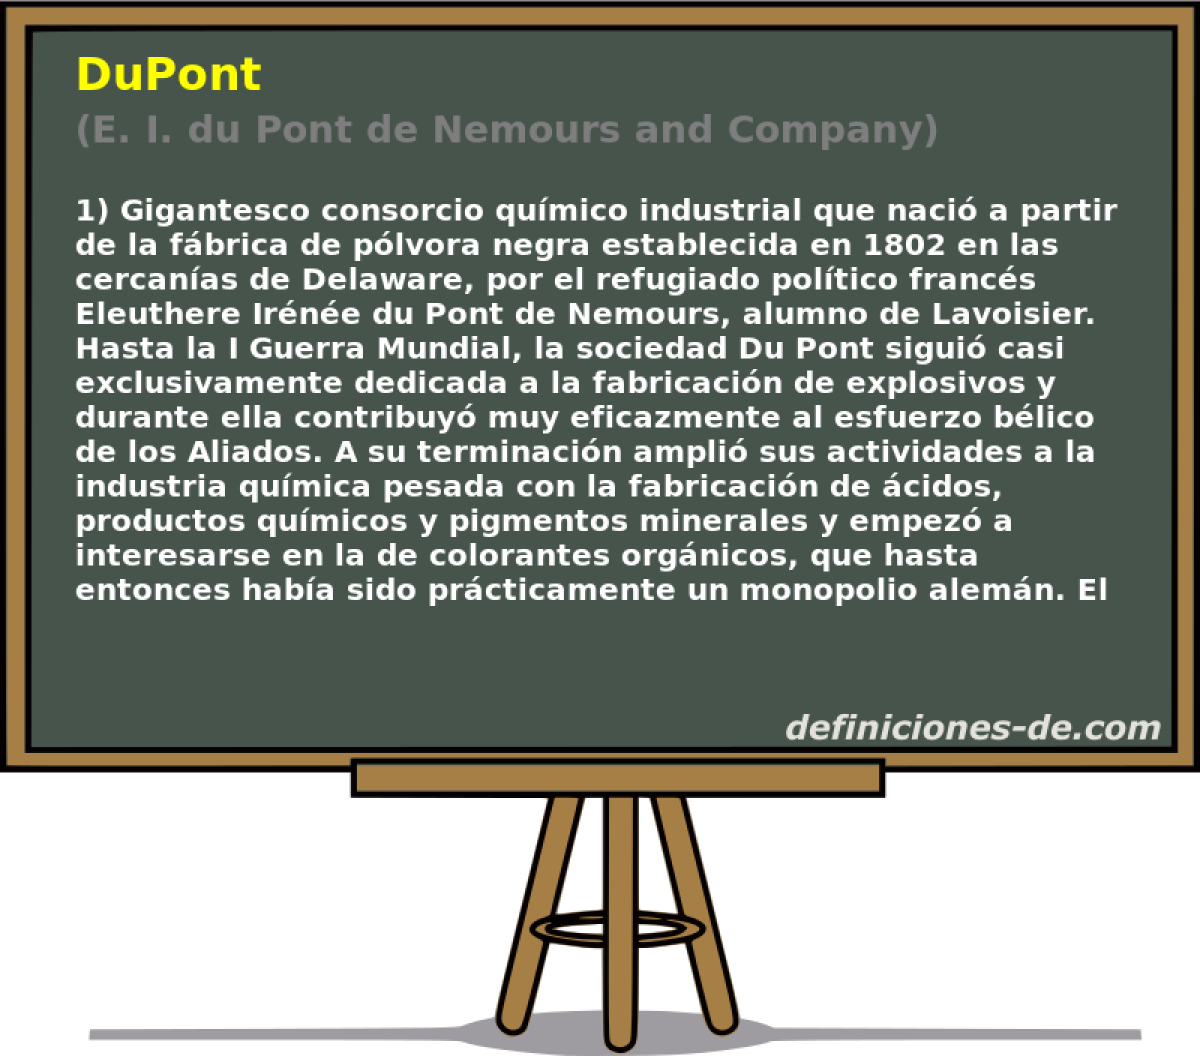 DuPont (E. I. du Pont de Nemours and Company)